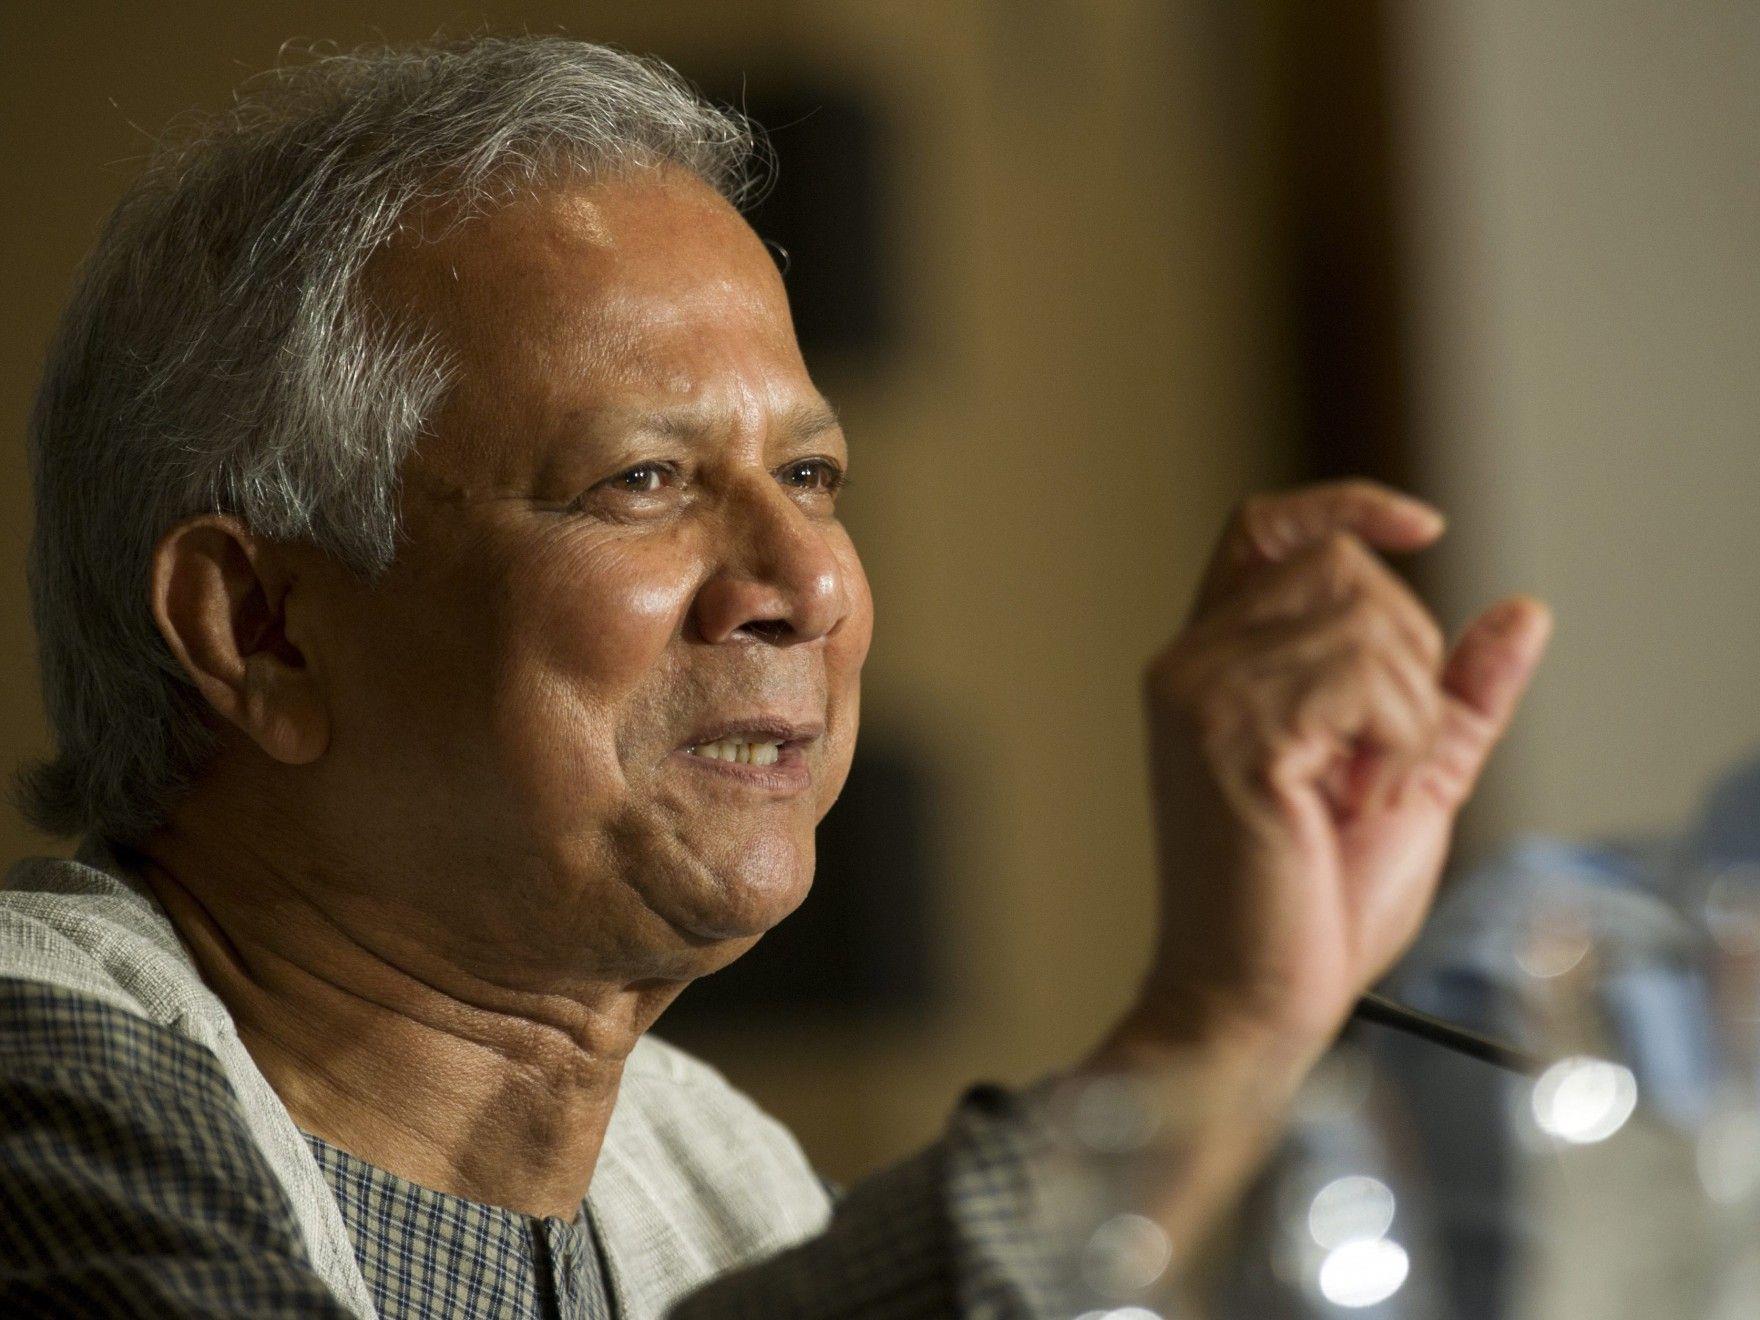 "US-Präsident entscheidet Schicksal der restlichen Welt", meint der Friedensnobelpreisträger Muhammad Yunus.